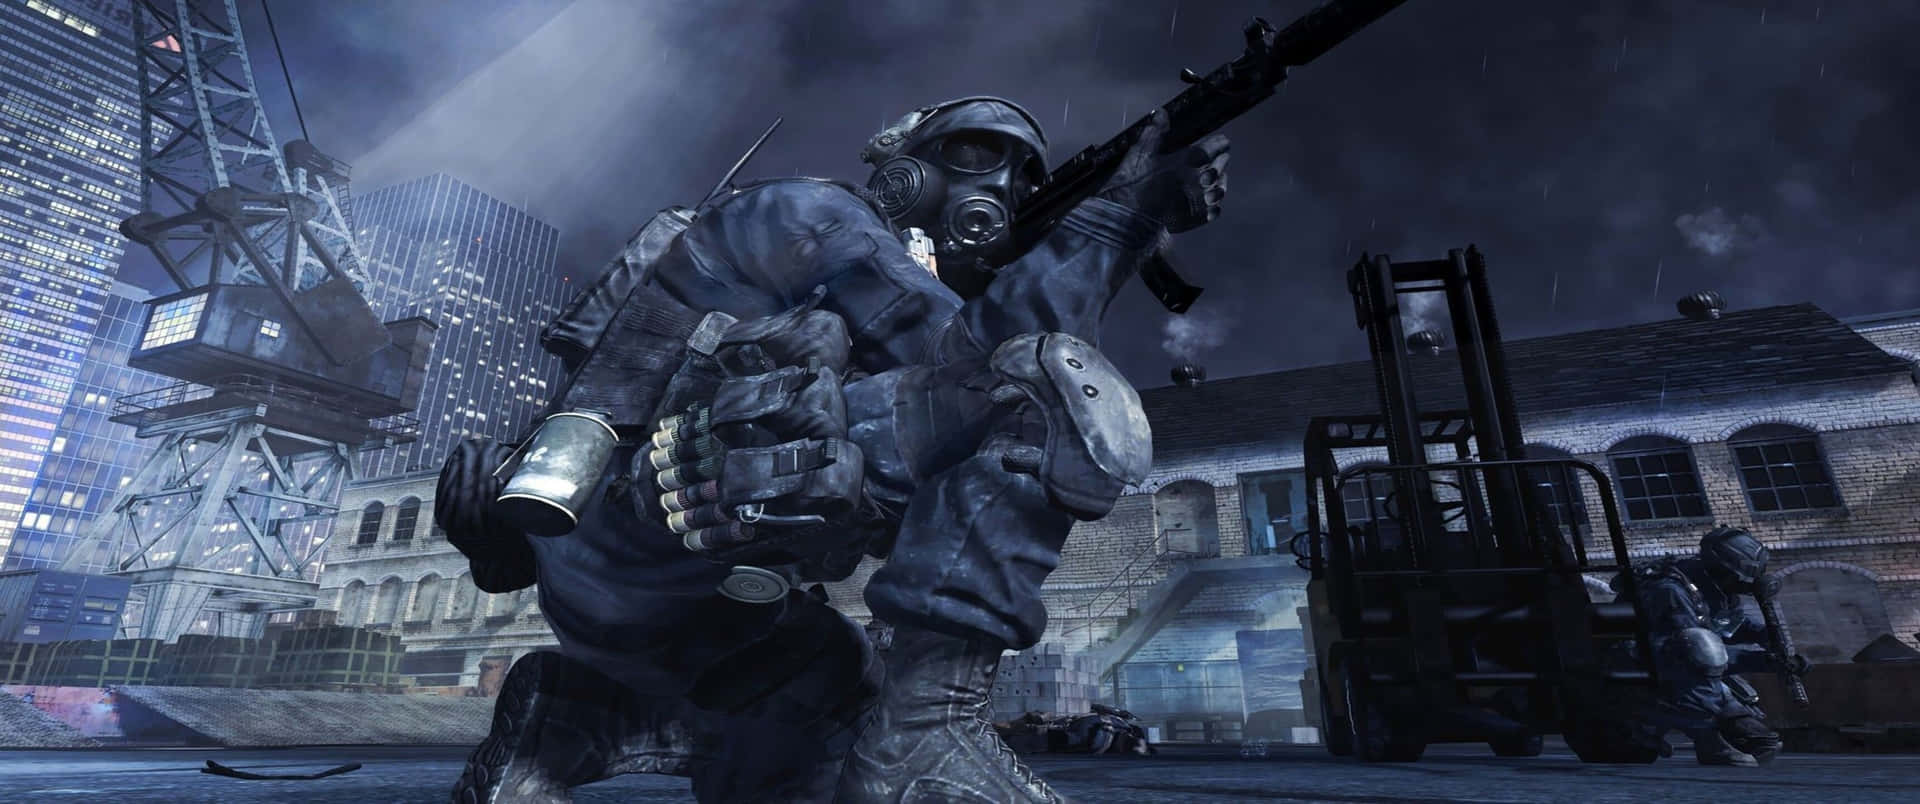 Soldadoarrodillado Fondo Call Of Duty Modern Warfare 3440x1440p.